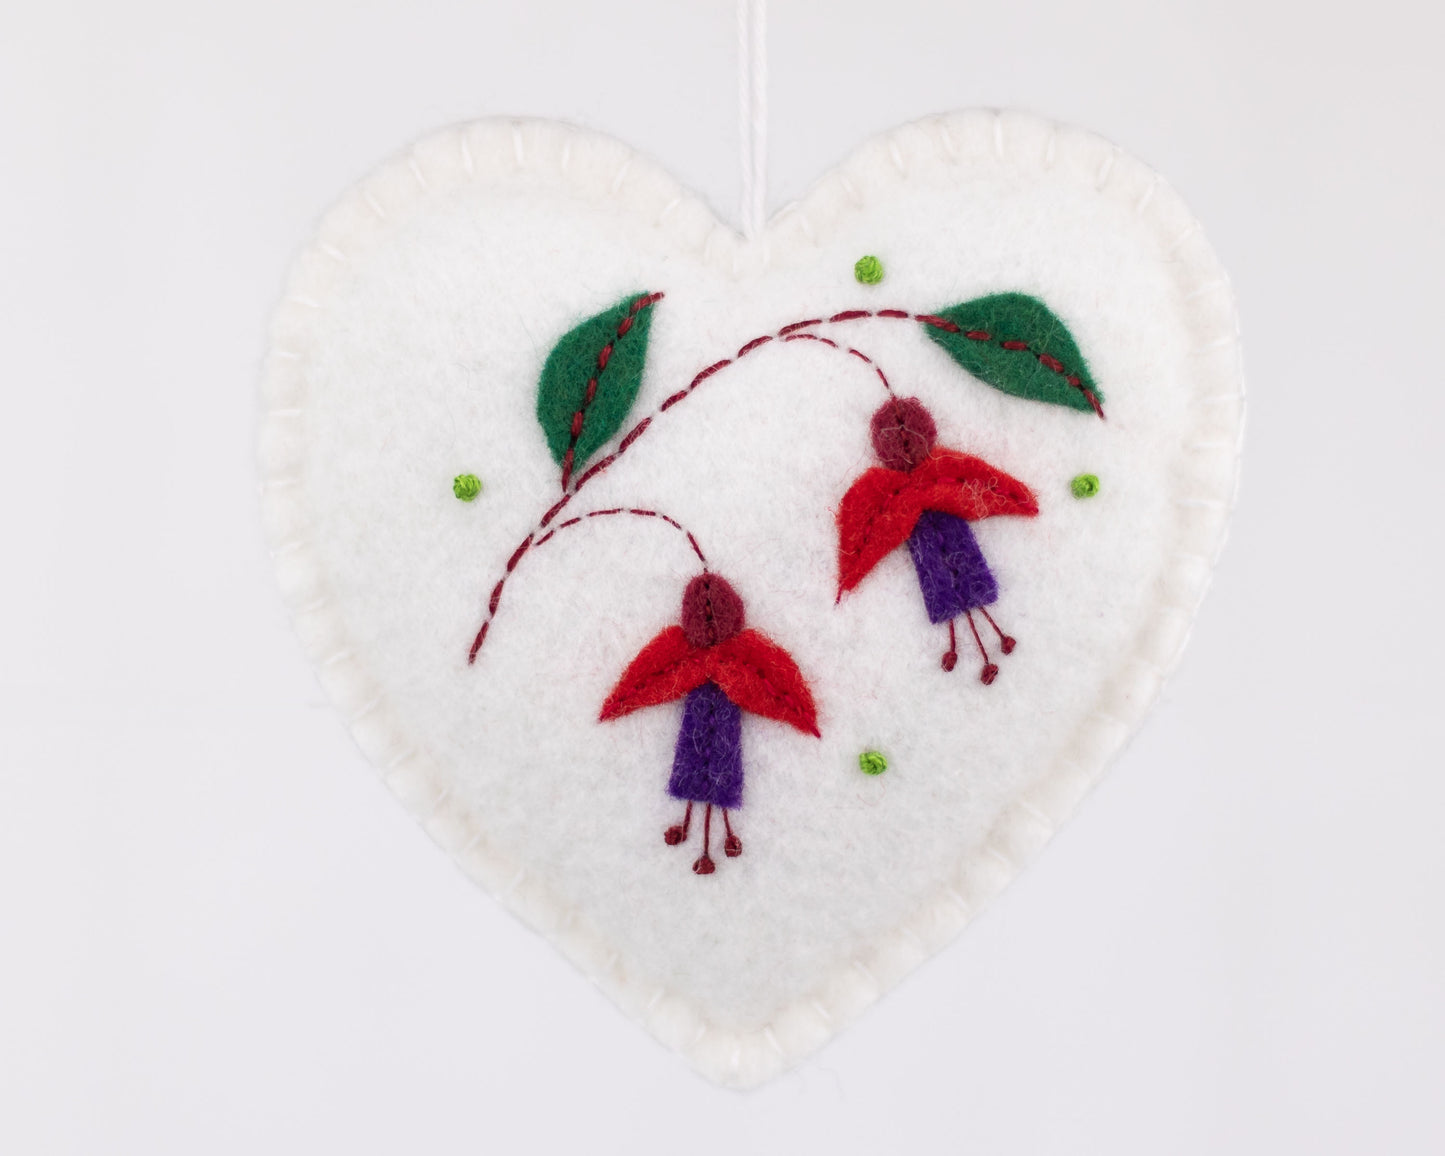 Felt Heart Christmas Ornament, Fuchsia Floral Heart